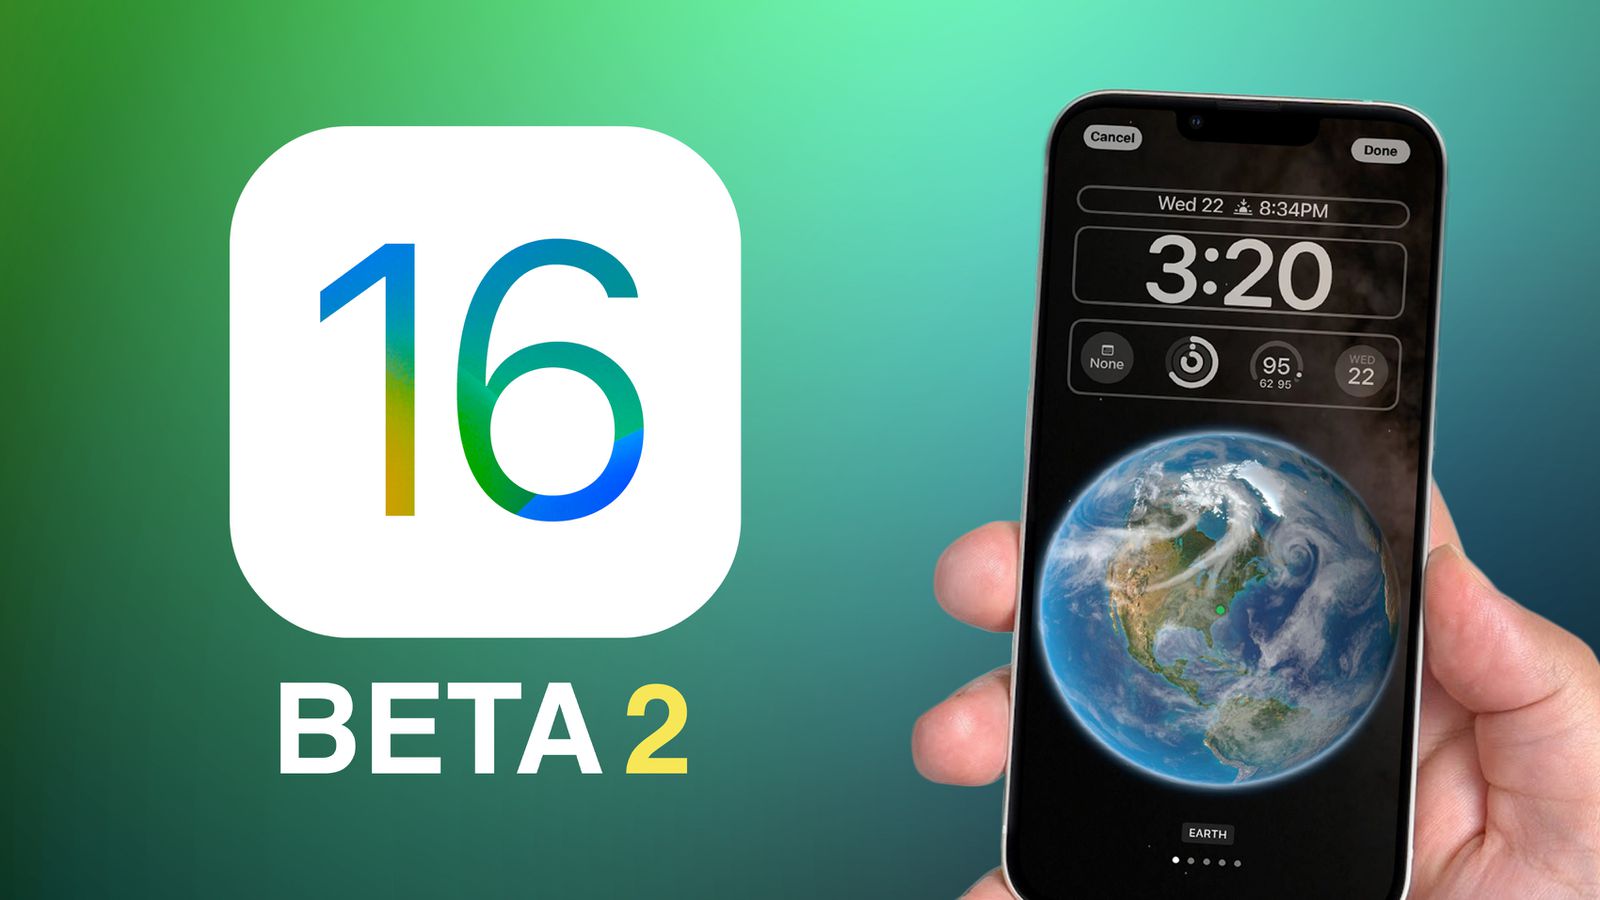 Sắp ra mắt iOS 16 Beta 2 với màu sắc mới cực kỳ ấn tượng trên ảnh nền, sao lưu qua LTE và tin nhắn SMS. Hãy cập nhật ngay phiên bản mới này để thưởng thức những tính năng tối ưu và những bức ảnh nền mới lạ trên điện thoại iOS của mình.